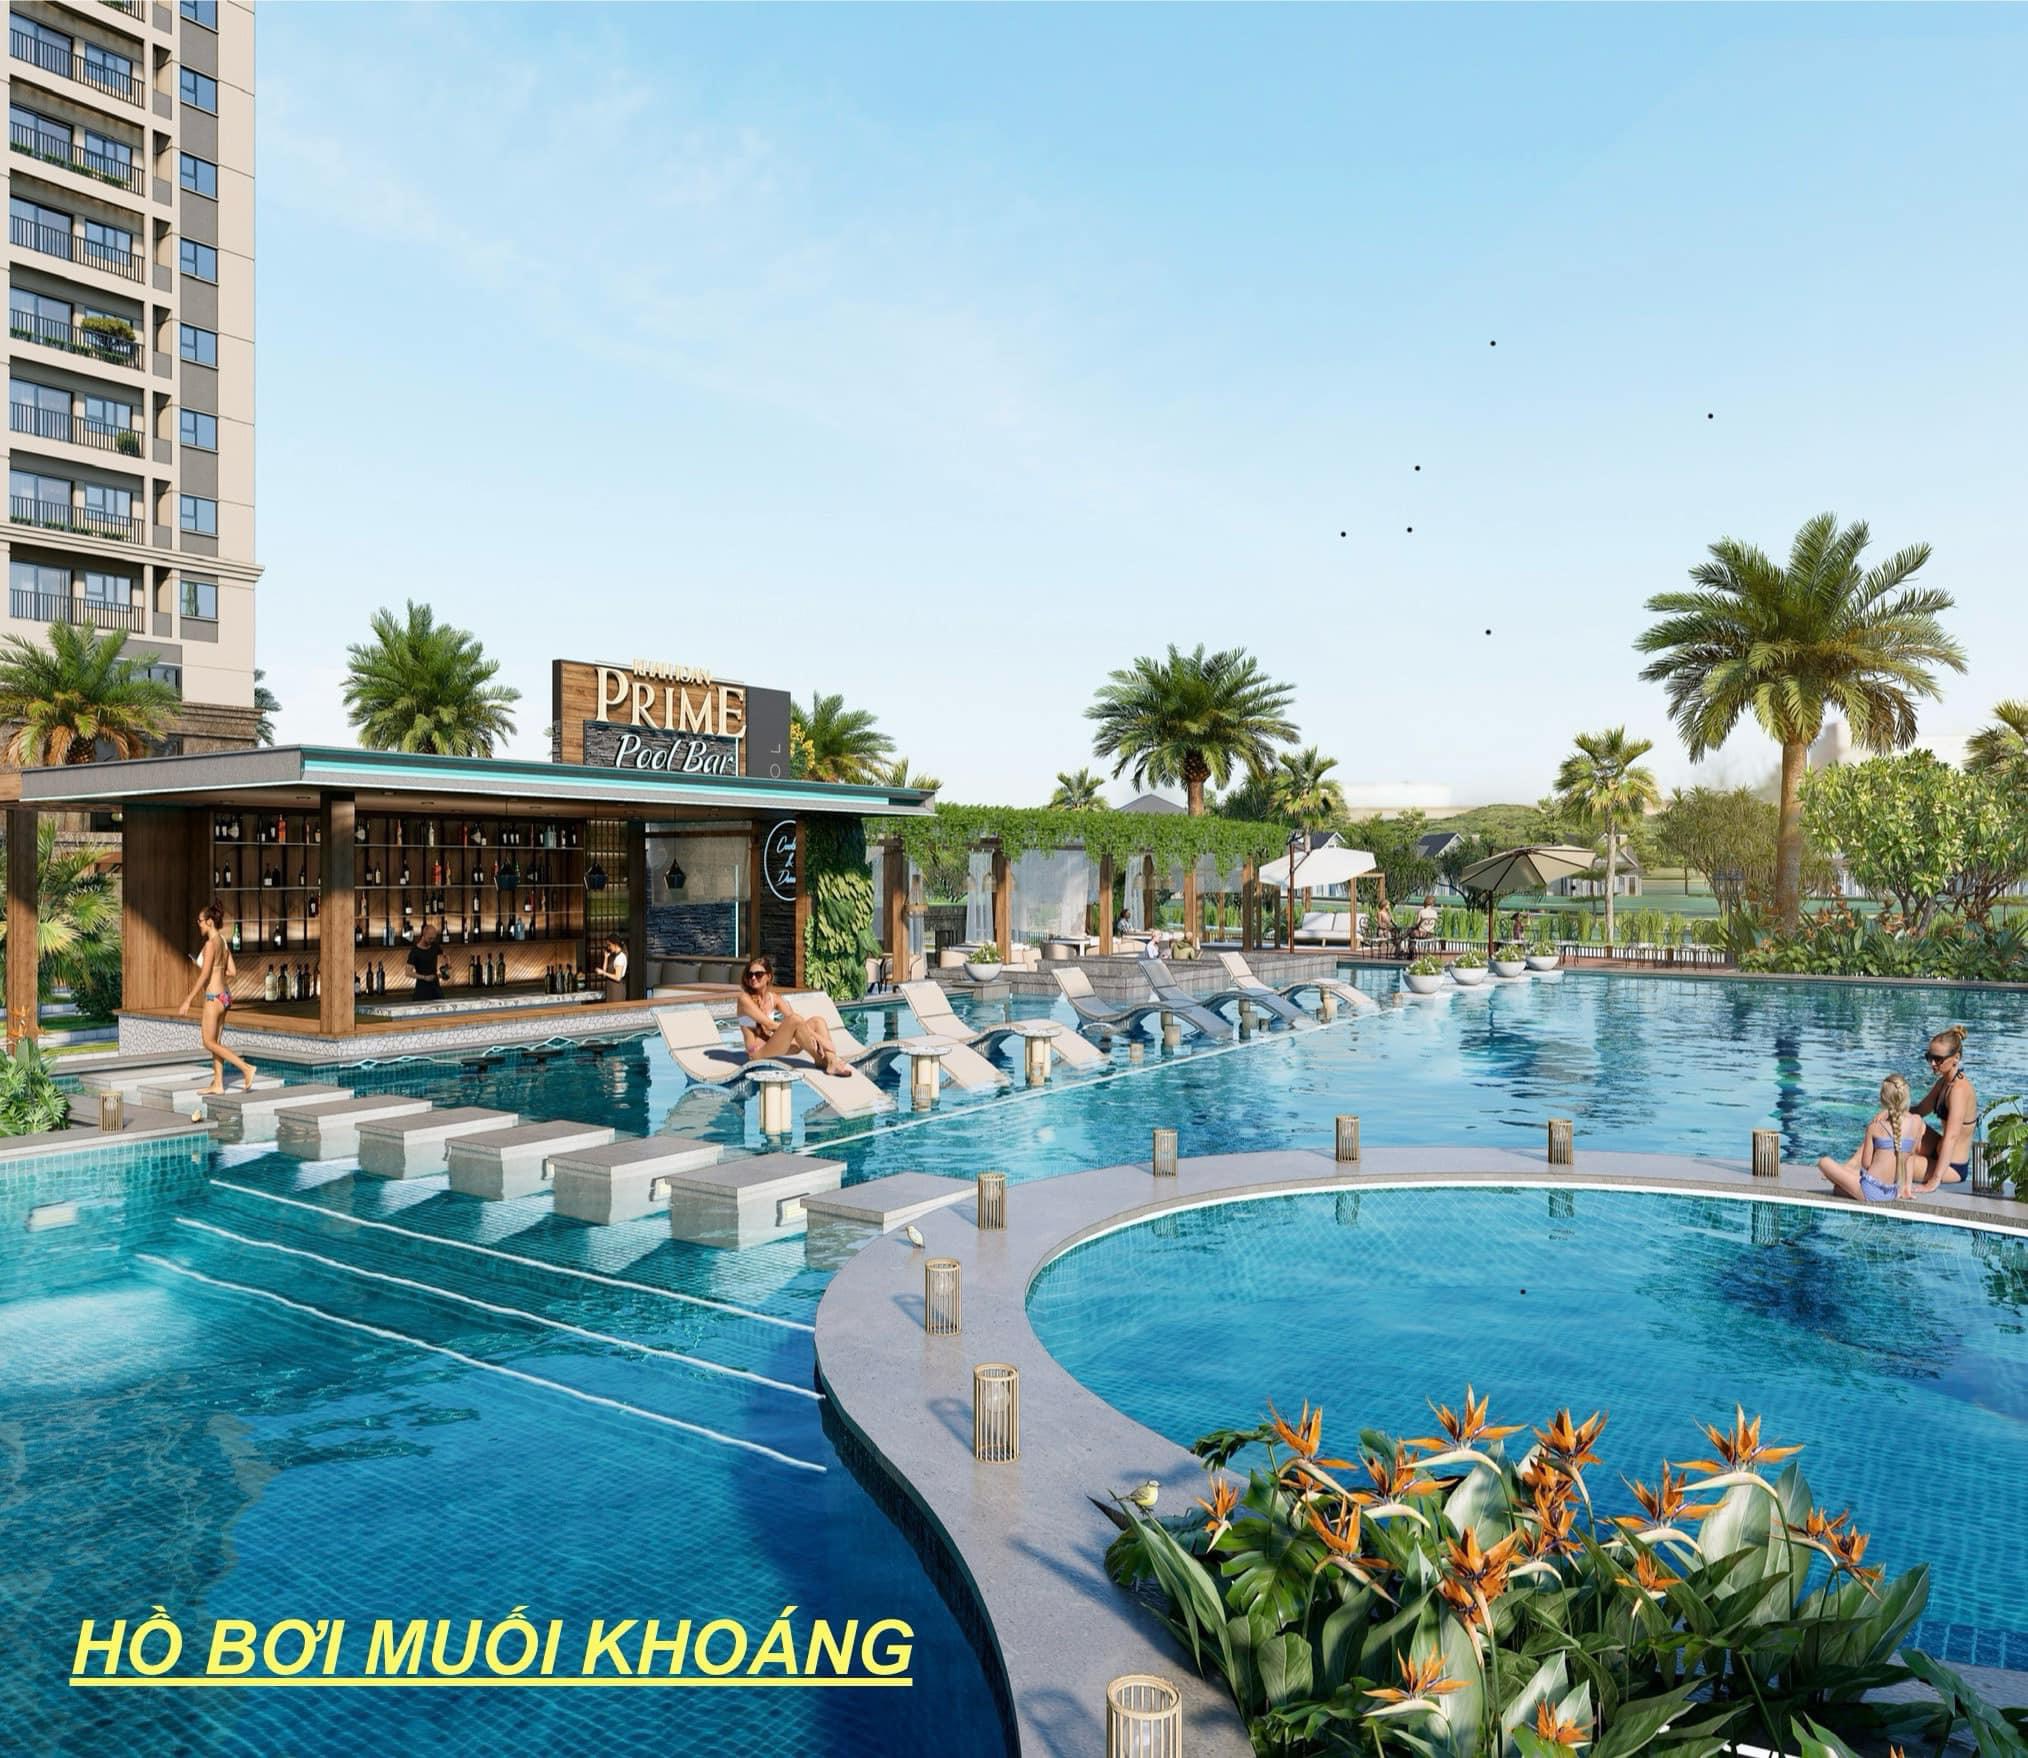 𝐊𝐡𝐚𝐢 𝐇𝐨𝐚𝐧 𝐏𝐫𝐢𝐦𝐞 - Căn hộ ven sông đẳng cấp Resort kề Phú Mỹ Hưng Q7 CK 14% GIÁ 2 tỷ/căn - Ảnh 2